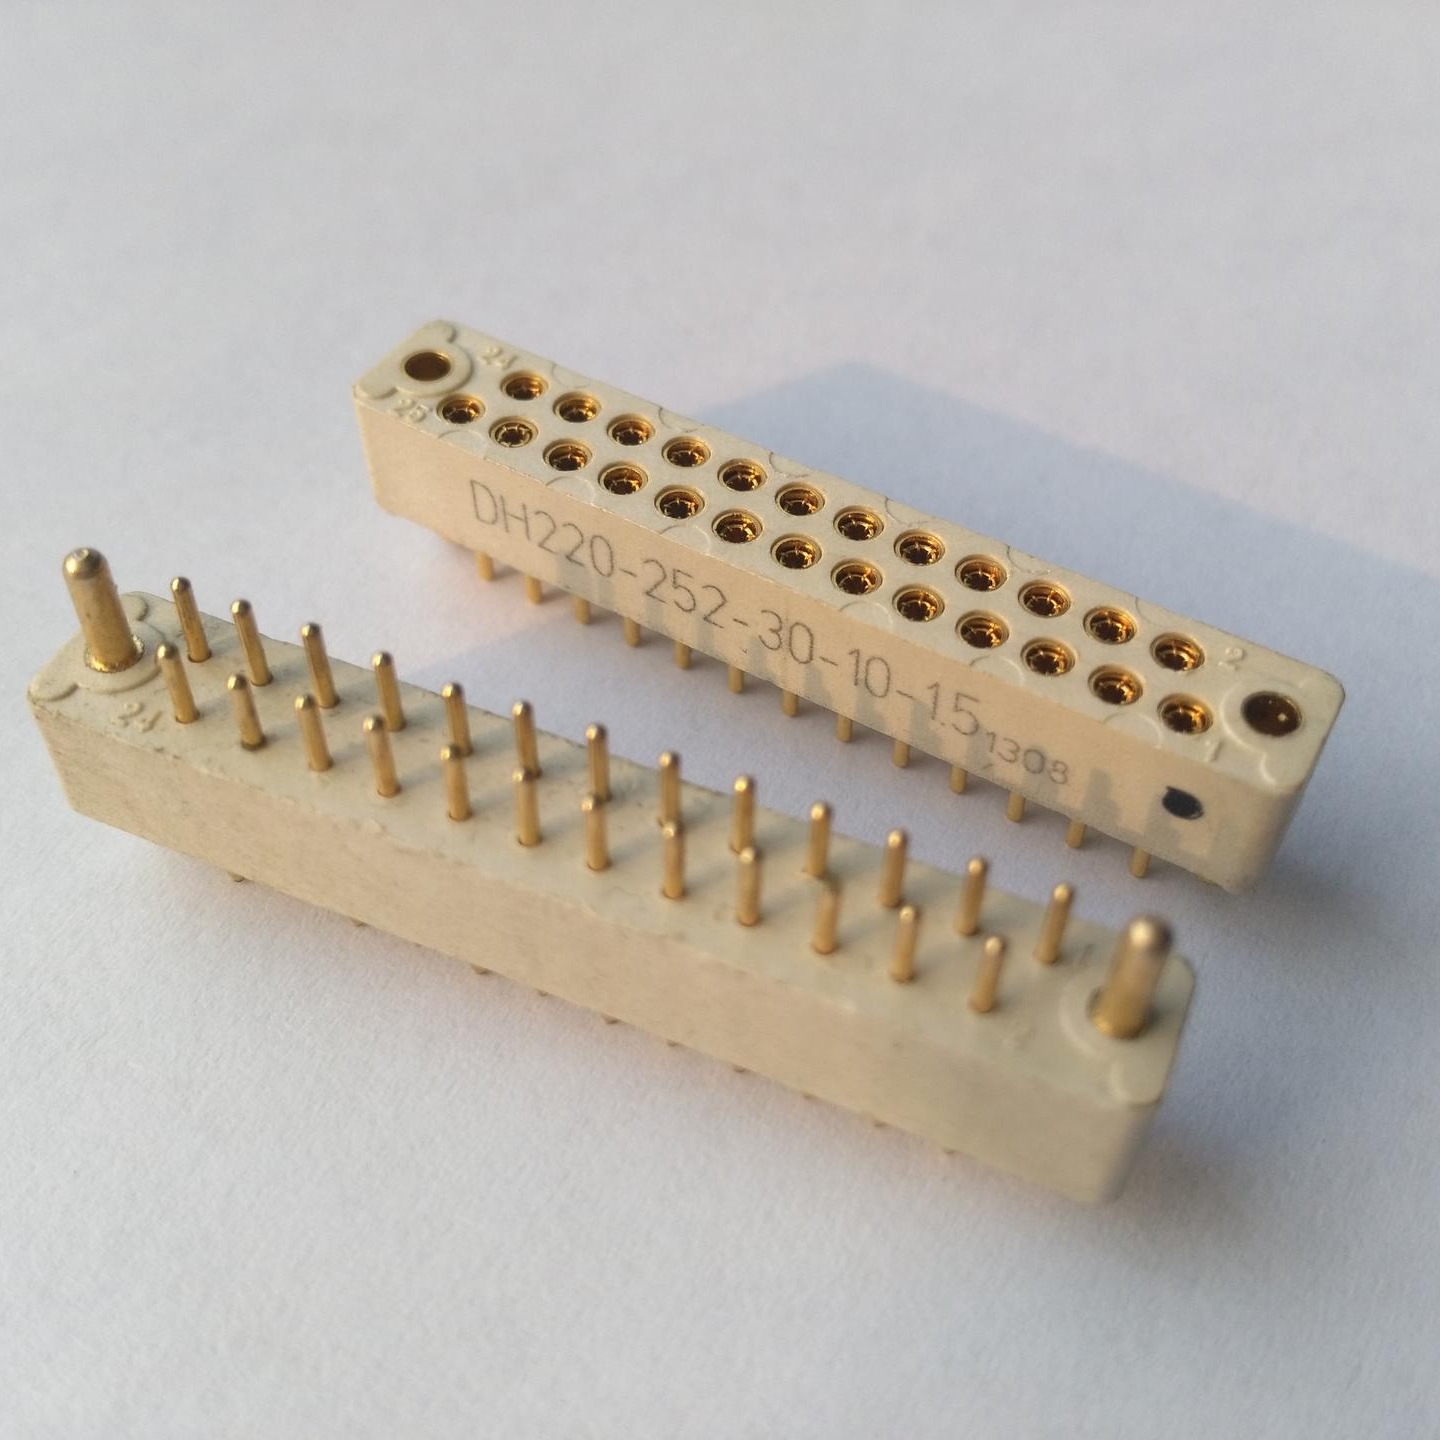 线簧连接器  25芯线簧印制板连接器  生产批发 东普电子  带导向  可用于背板连接器  长寿命5000至10000次